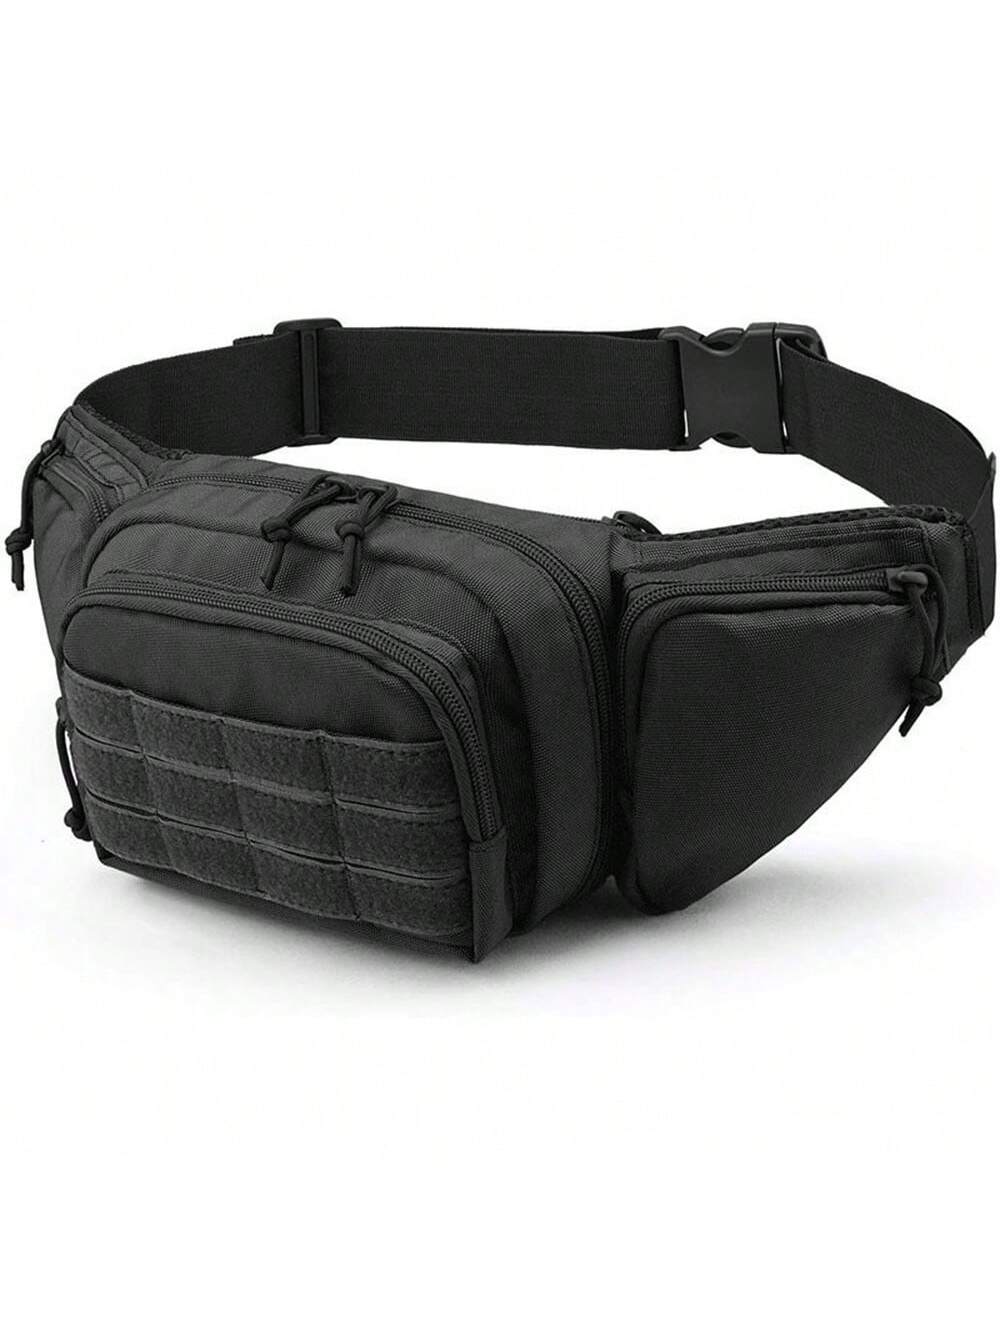 Тактический поясной рюкзак, черный кепка бейсболка emersongear aor1 em8738 тактическая для активного отдыха походов страйкбола охоты кемпинга